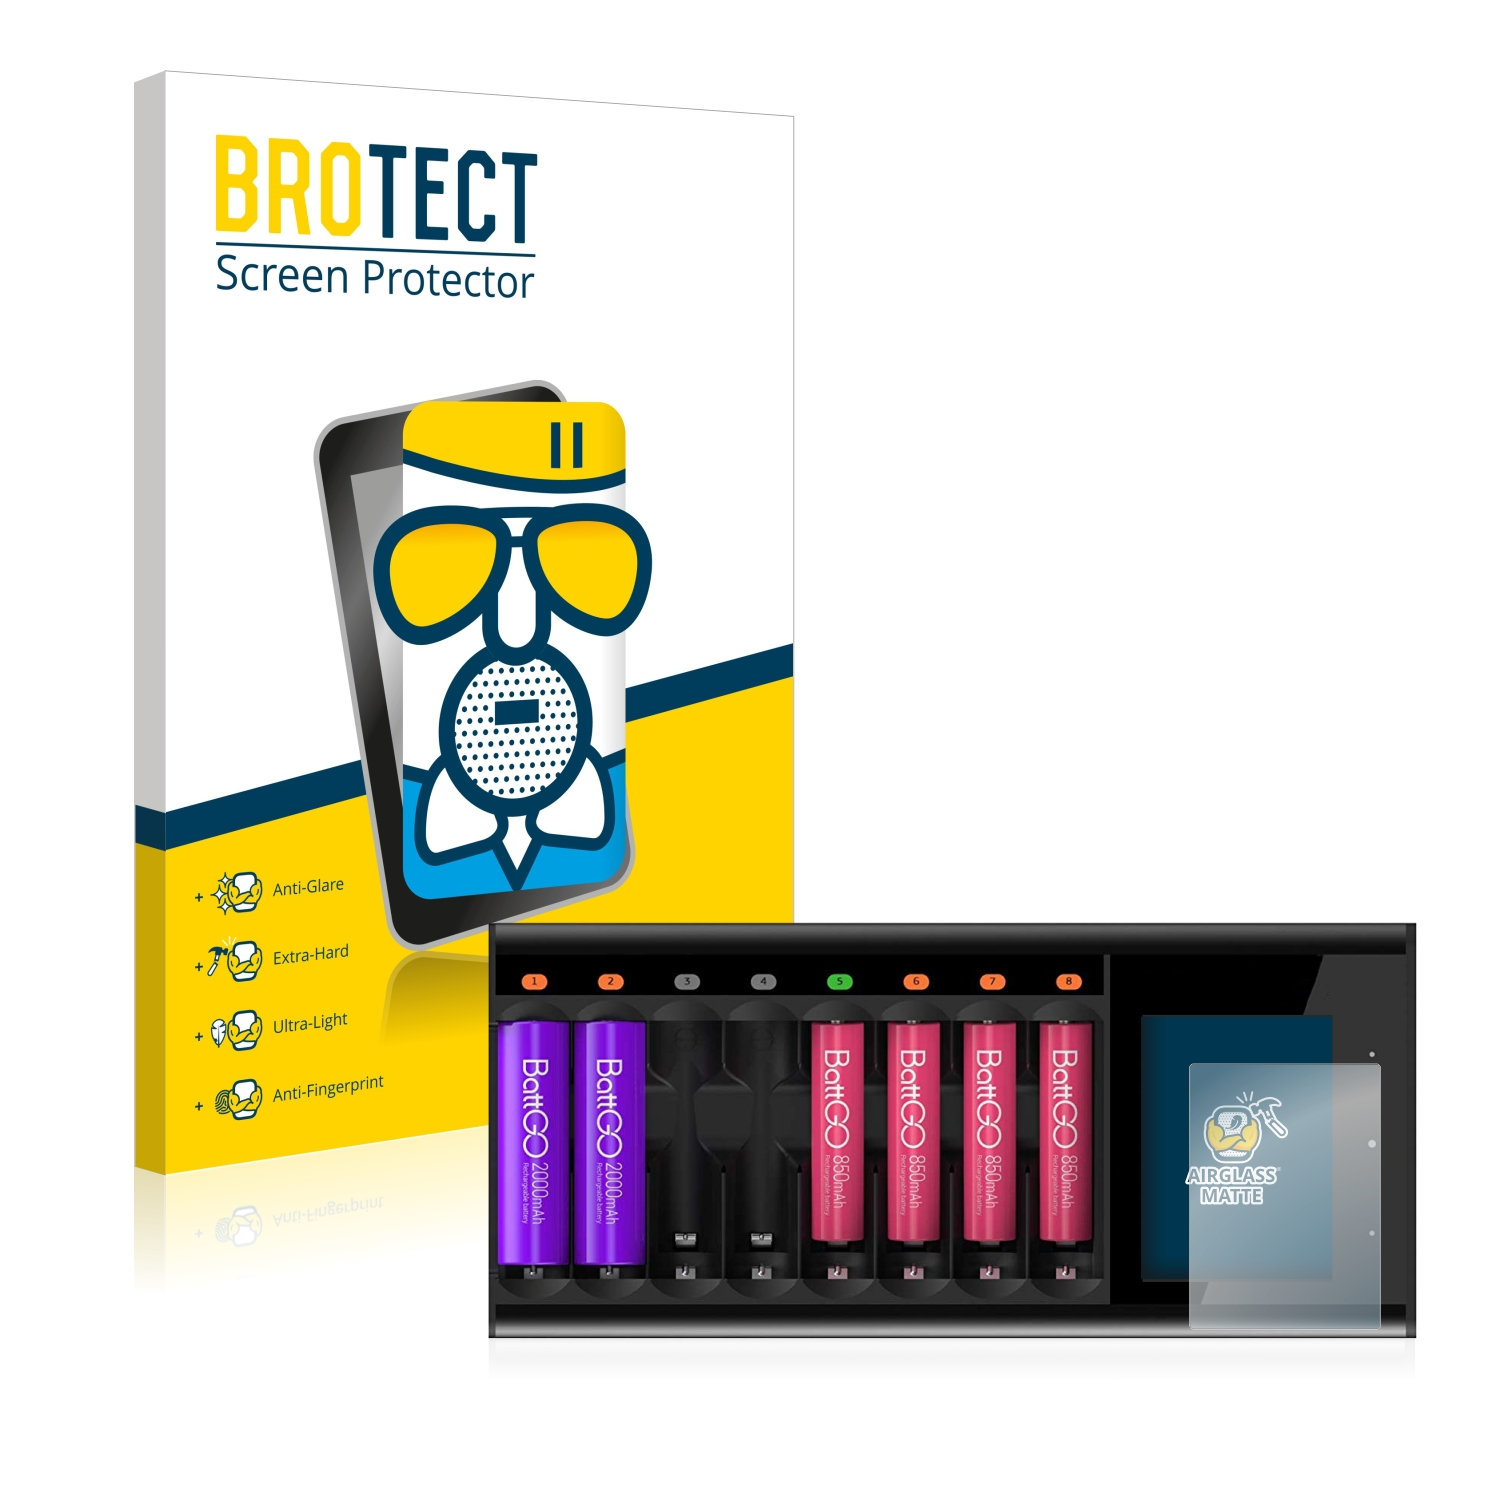 BROTECT Airglass matte Schutzfolie(für ISDT Smart Charger N8)